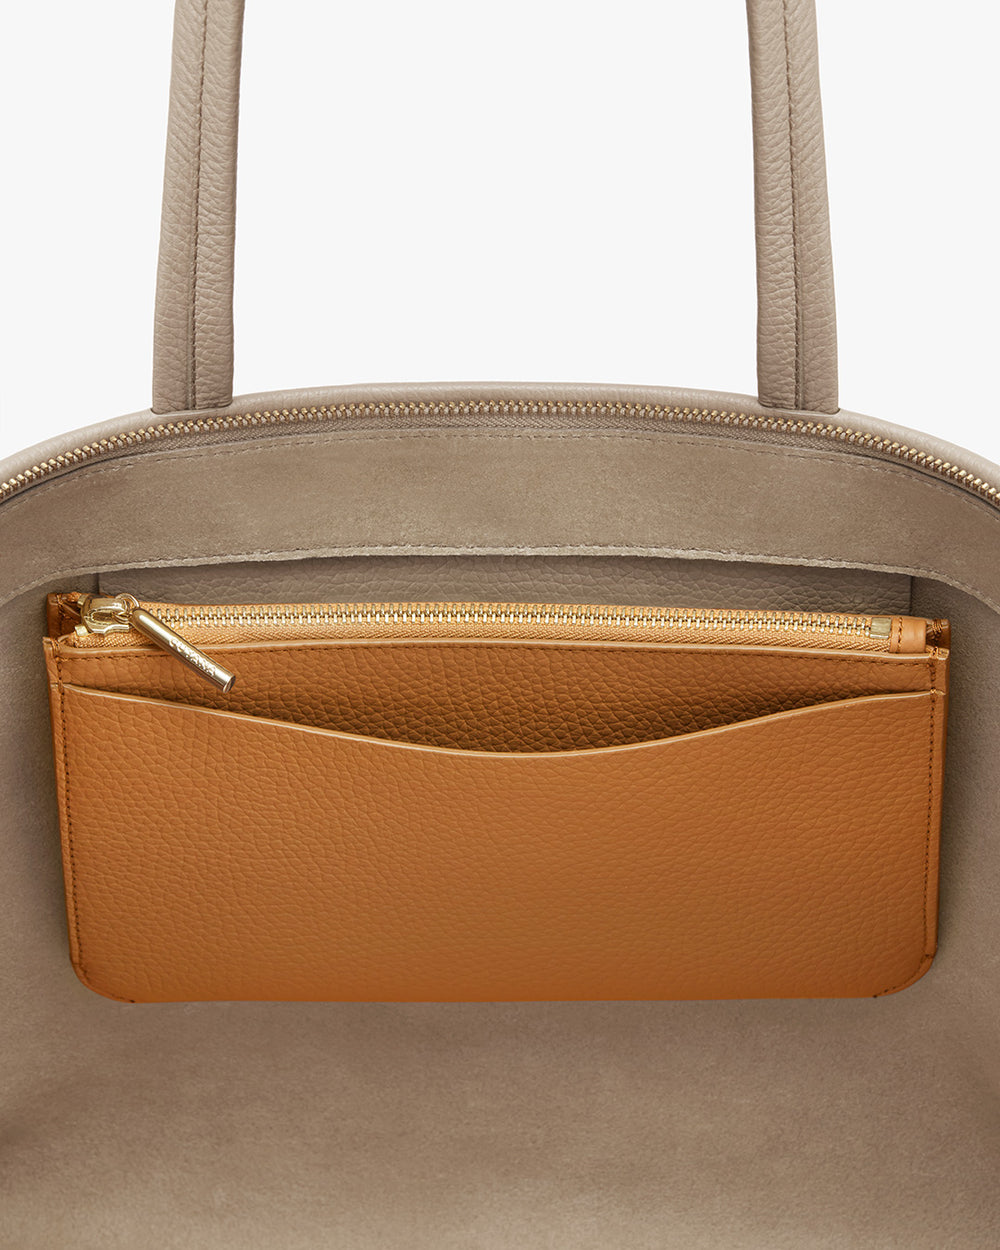 Close-up of a handbag with a zippered pocket.